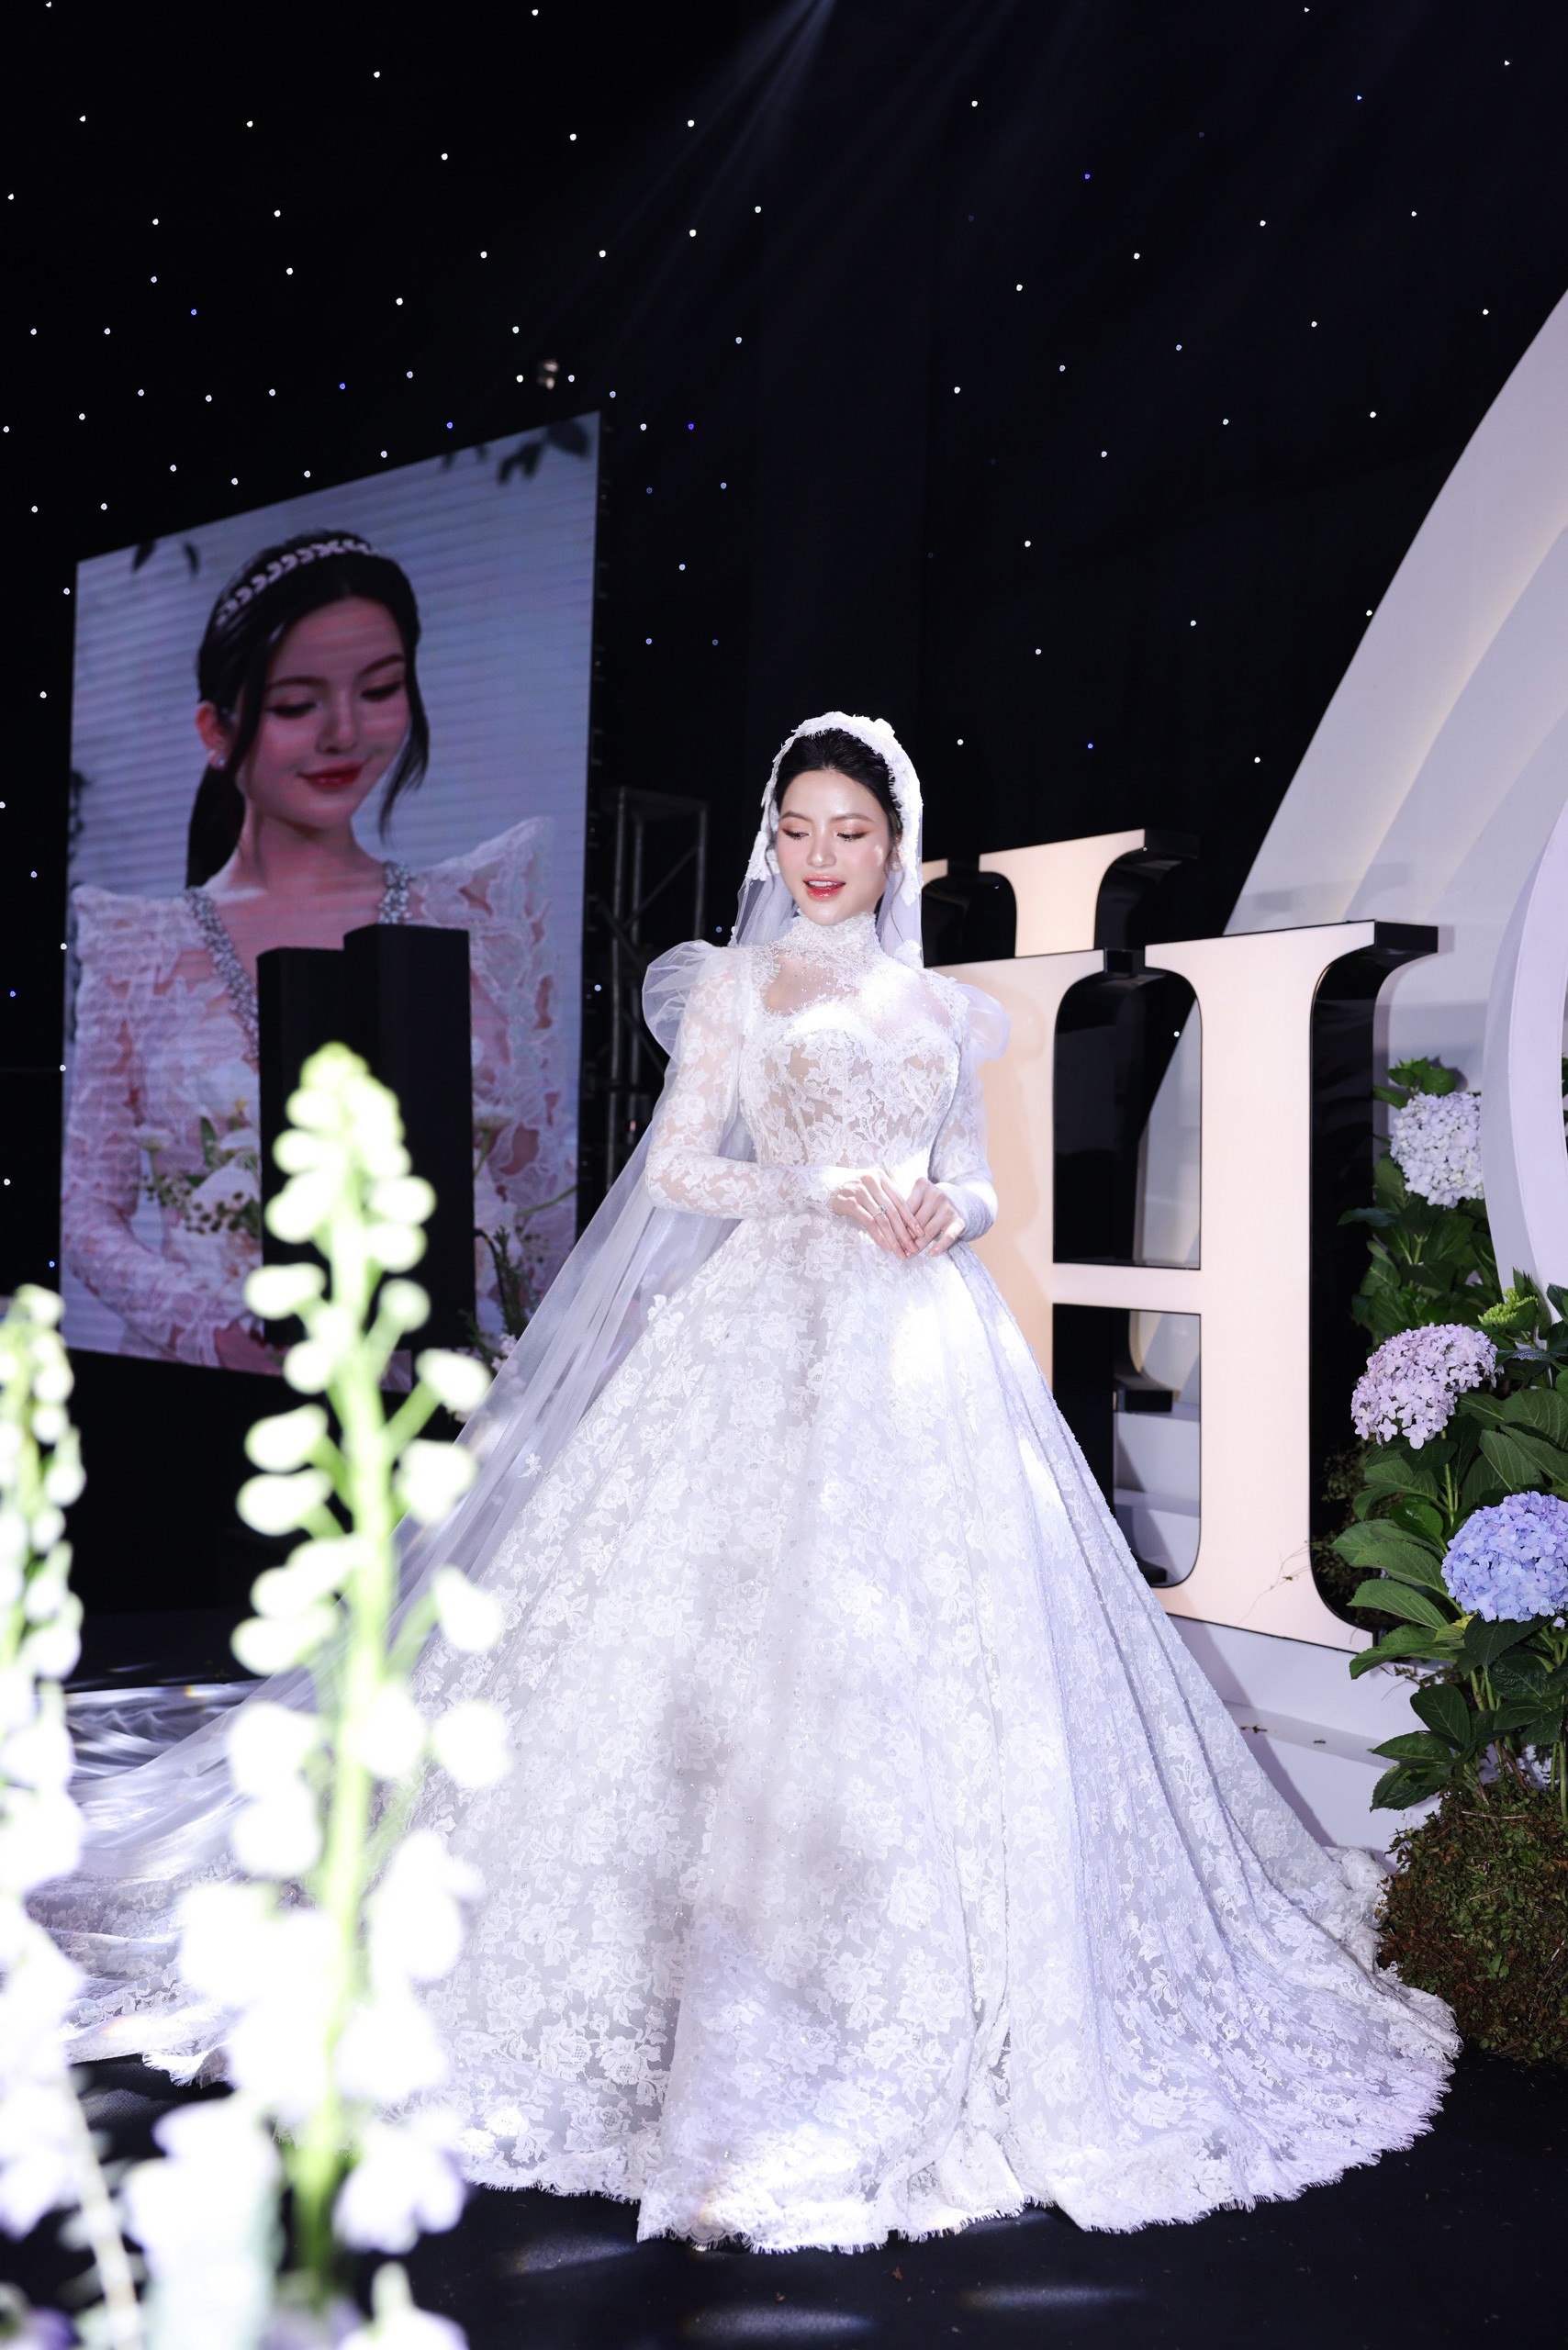 Diện váy cưới cúp ngực 150 triệu đồng, Chu Thanh Huyền rạng ngời bên Quang Hải ảnh 16